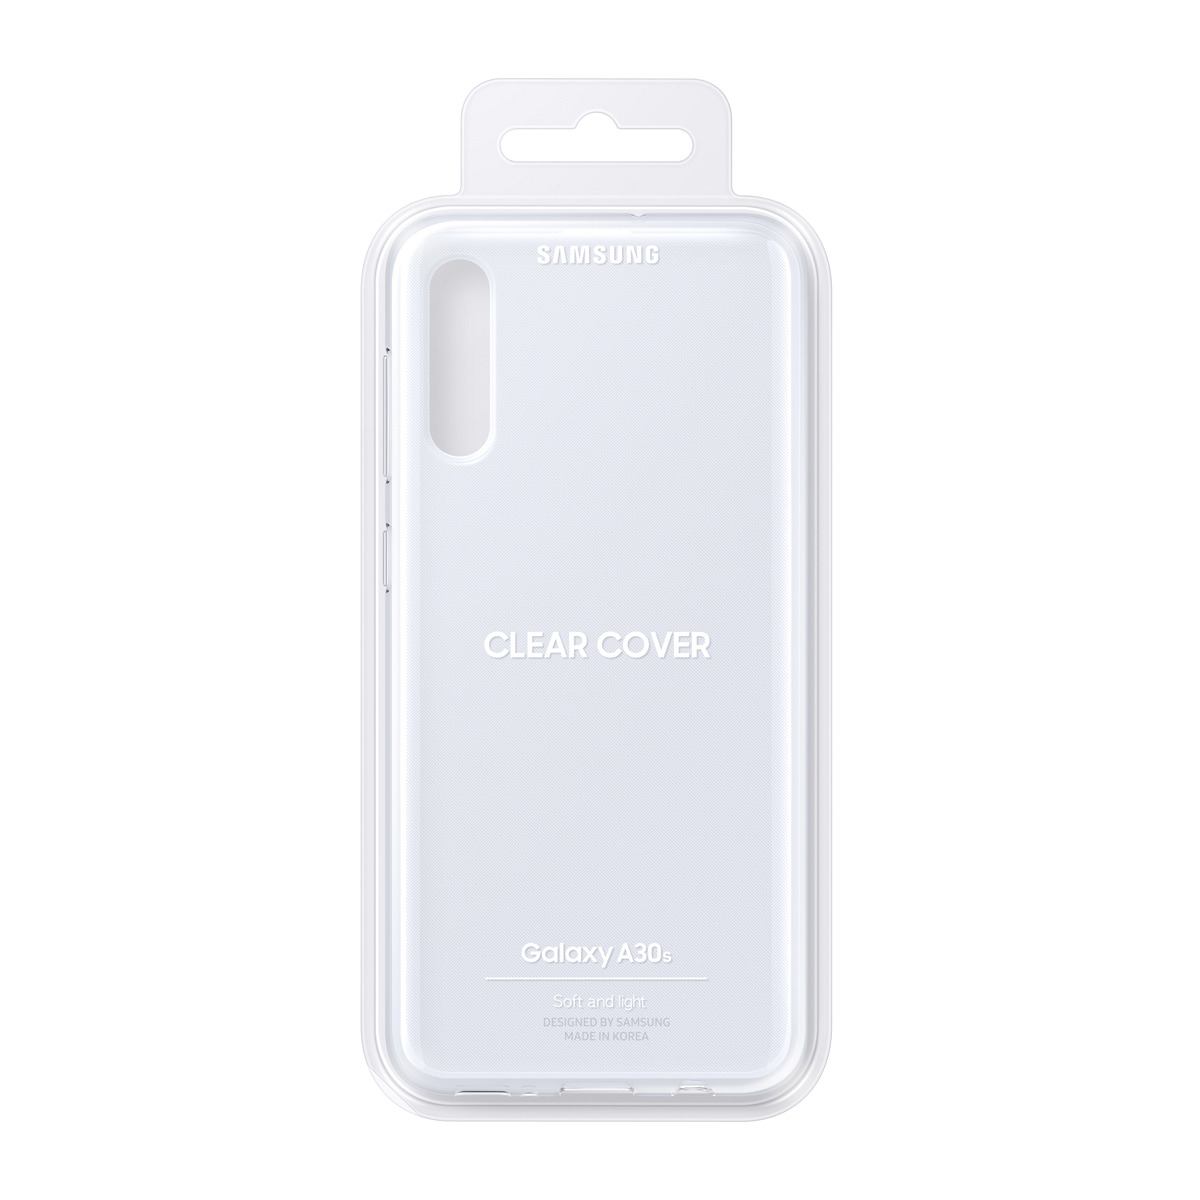 GALAXY WALLET Backcover, SAMSUNG Samsung, EF-WA307PWEGWW COVER A30s, WHITE, A30S Weiß Galaxy